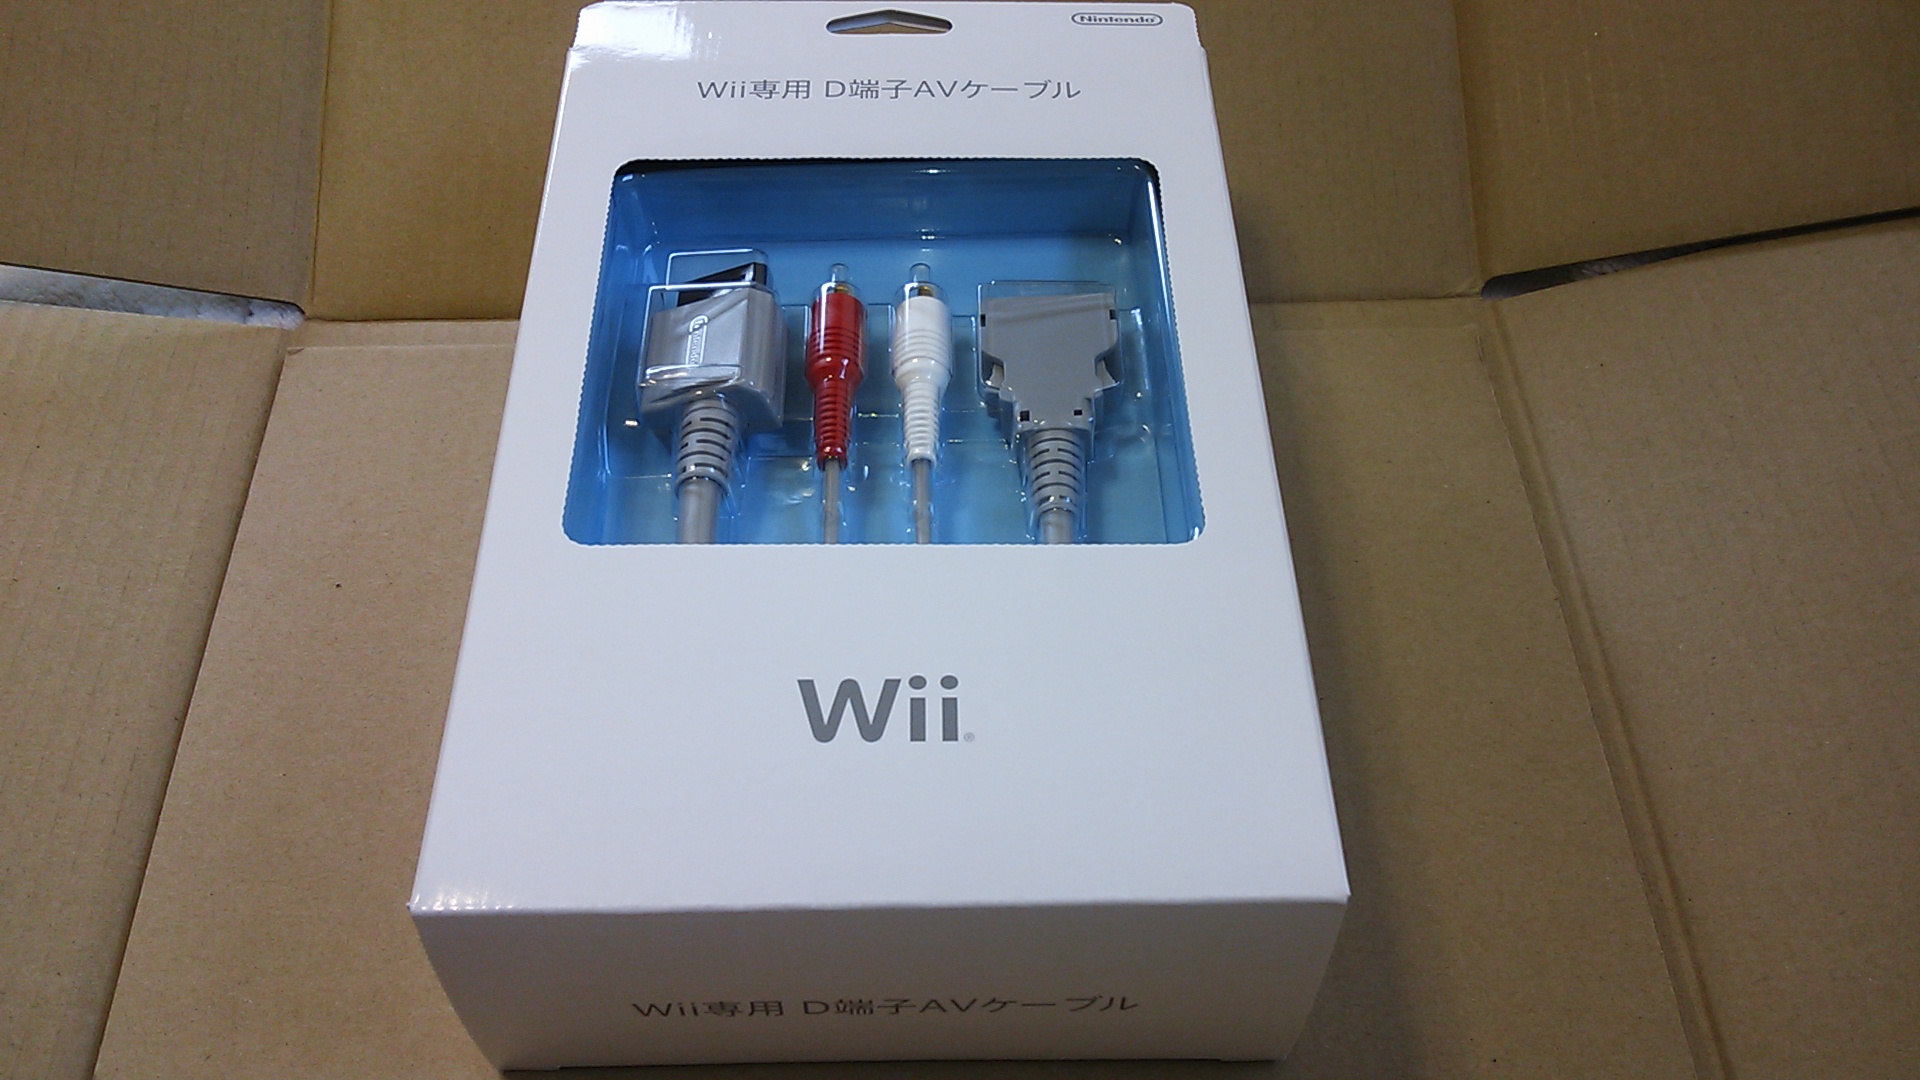 Wii専用 D端子AVケーブル」購入。GCとWiiソフトの映像をもっと綺麗に 